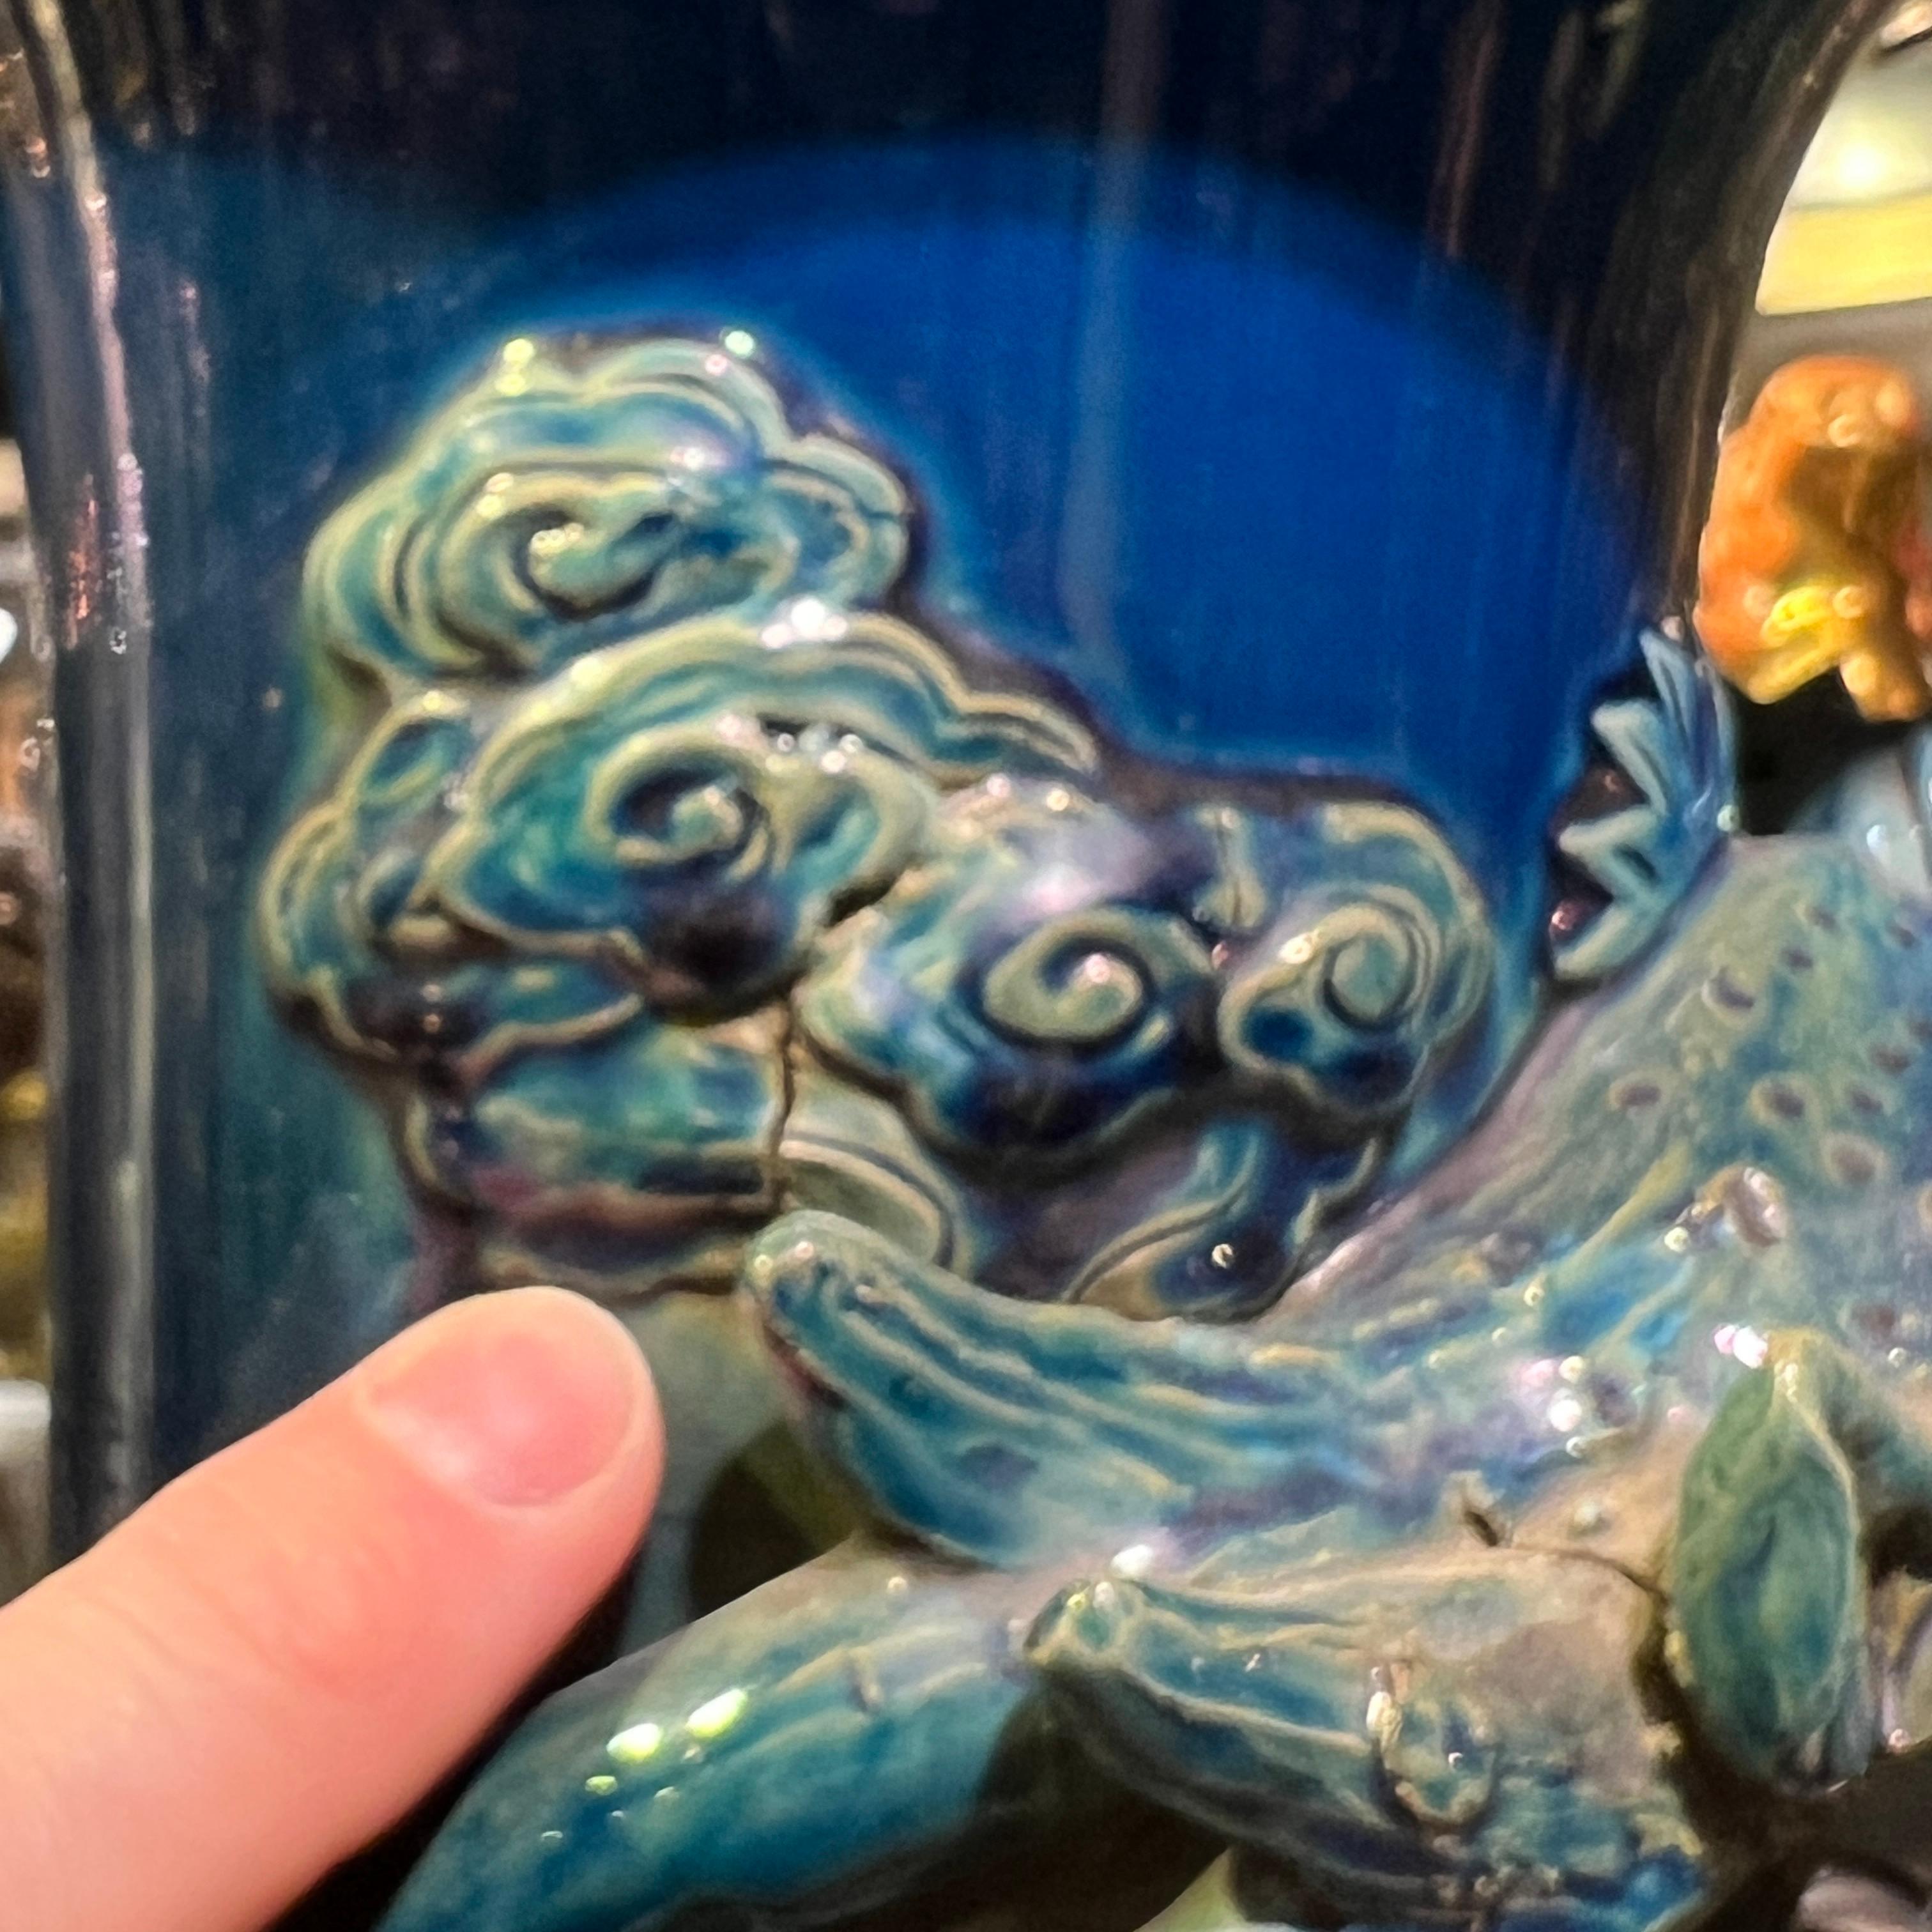 Sehr großer Japaner  Keramikvase mit blauer Flammenglasur und der sich windenden Figur eines Drachens.  Mit Holzständer.  Vase allein 30 1/2 Zoll hoch.  Standplatz 6 3/4 Zoll hoch.  Offensichtlich unsigniert.